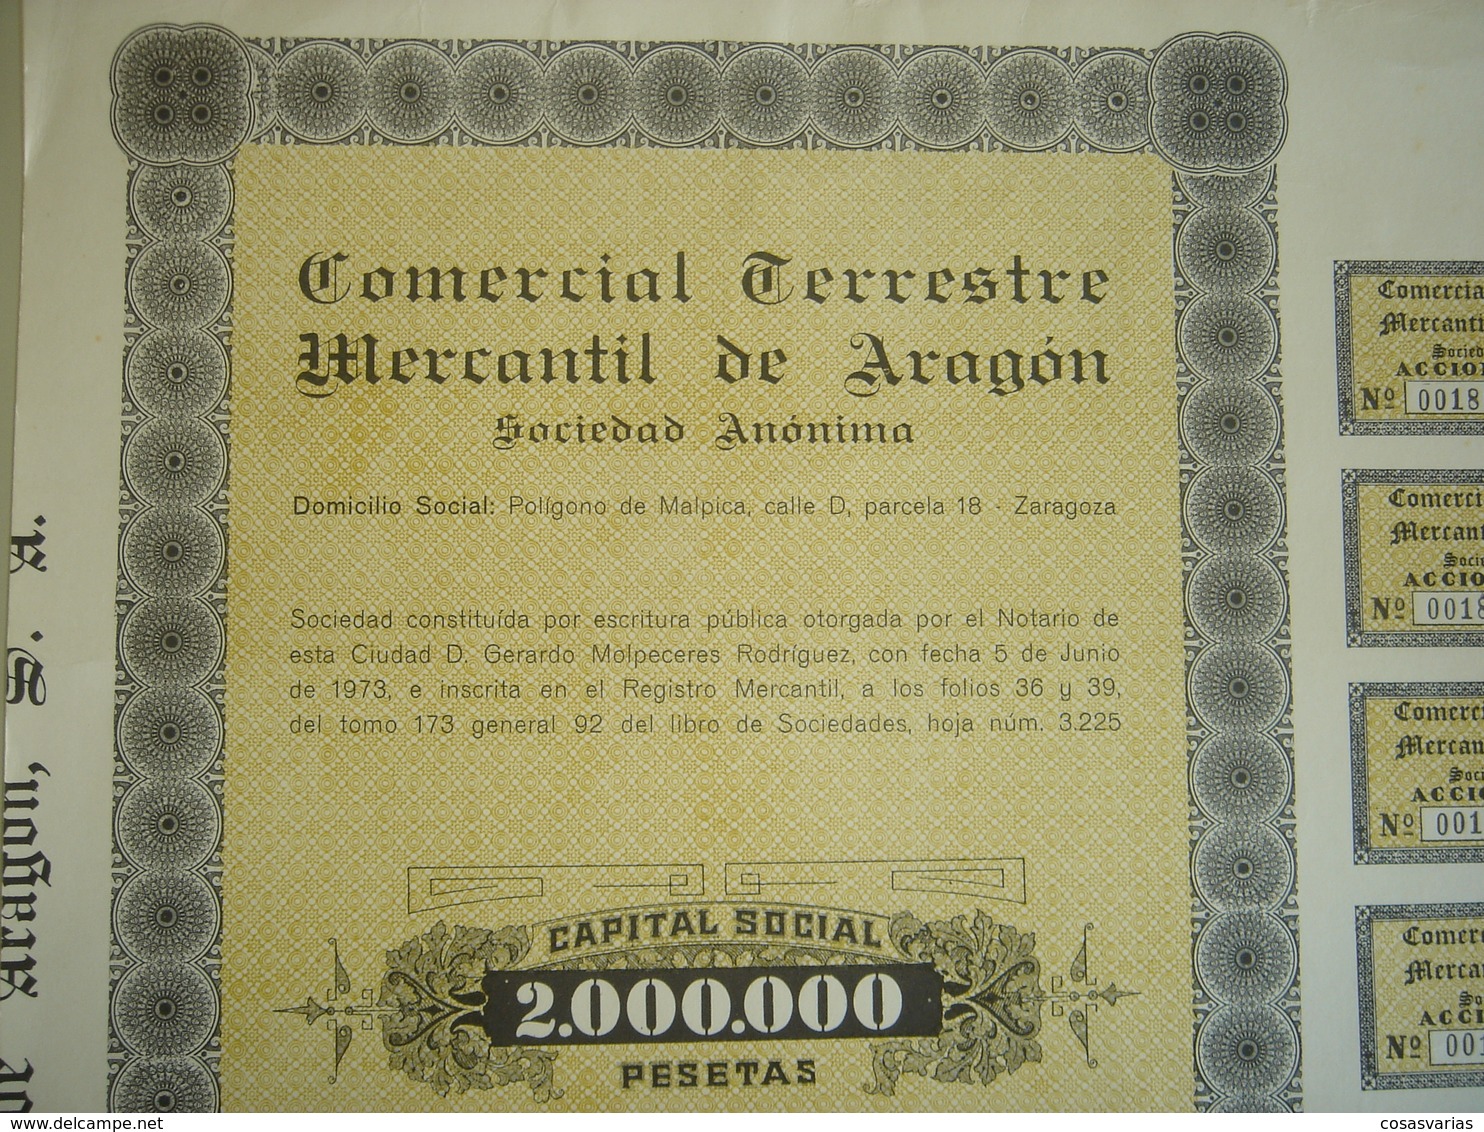 COMERCIAL TERRESTRE MERCANTIL ARAGÓN - Acción 1000 Pesetas - Zaragoza, 5 Junio 1974 - OriginalACTION AKTION - Trasporti